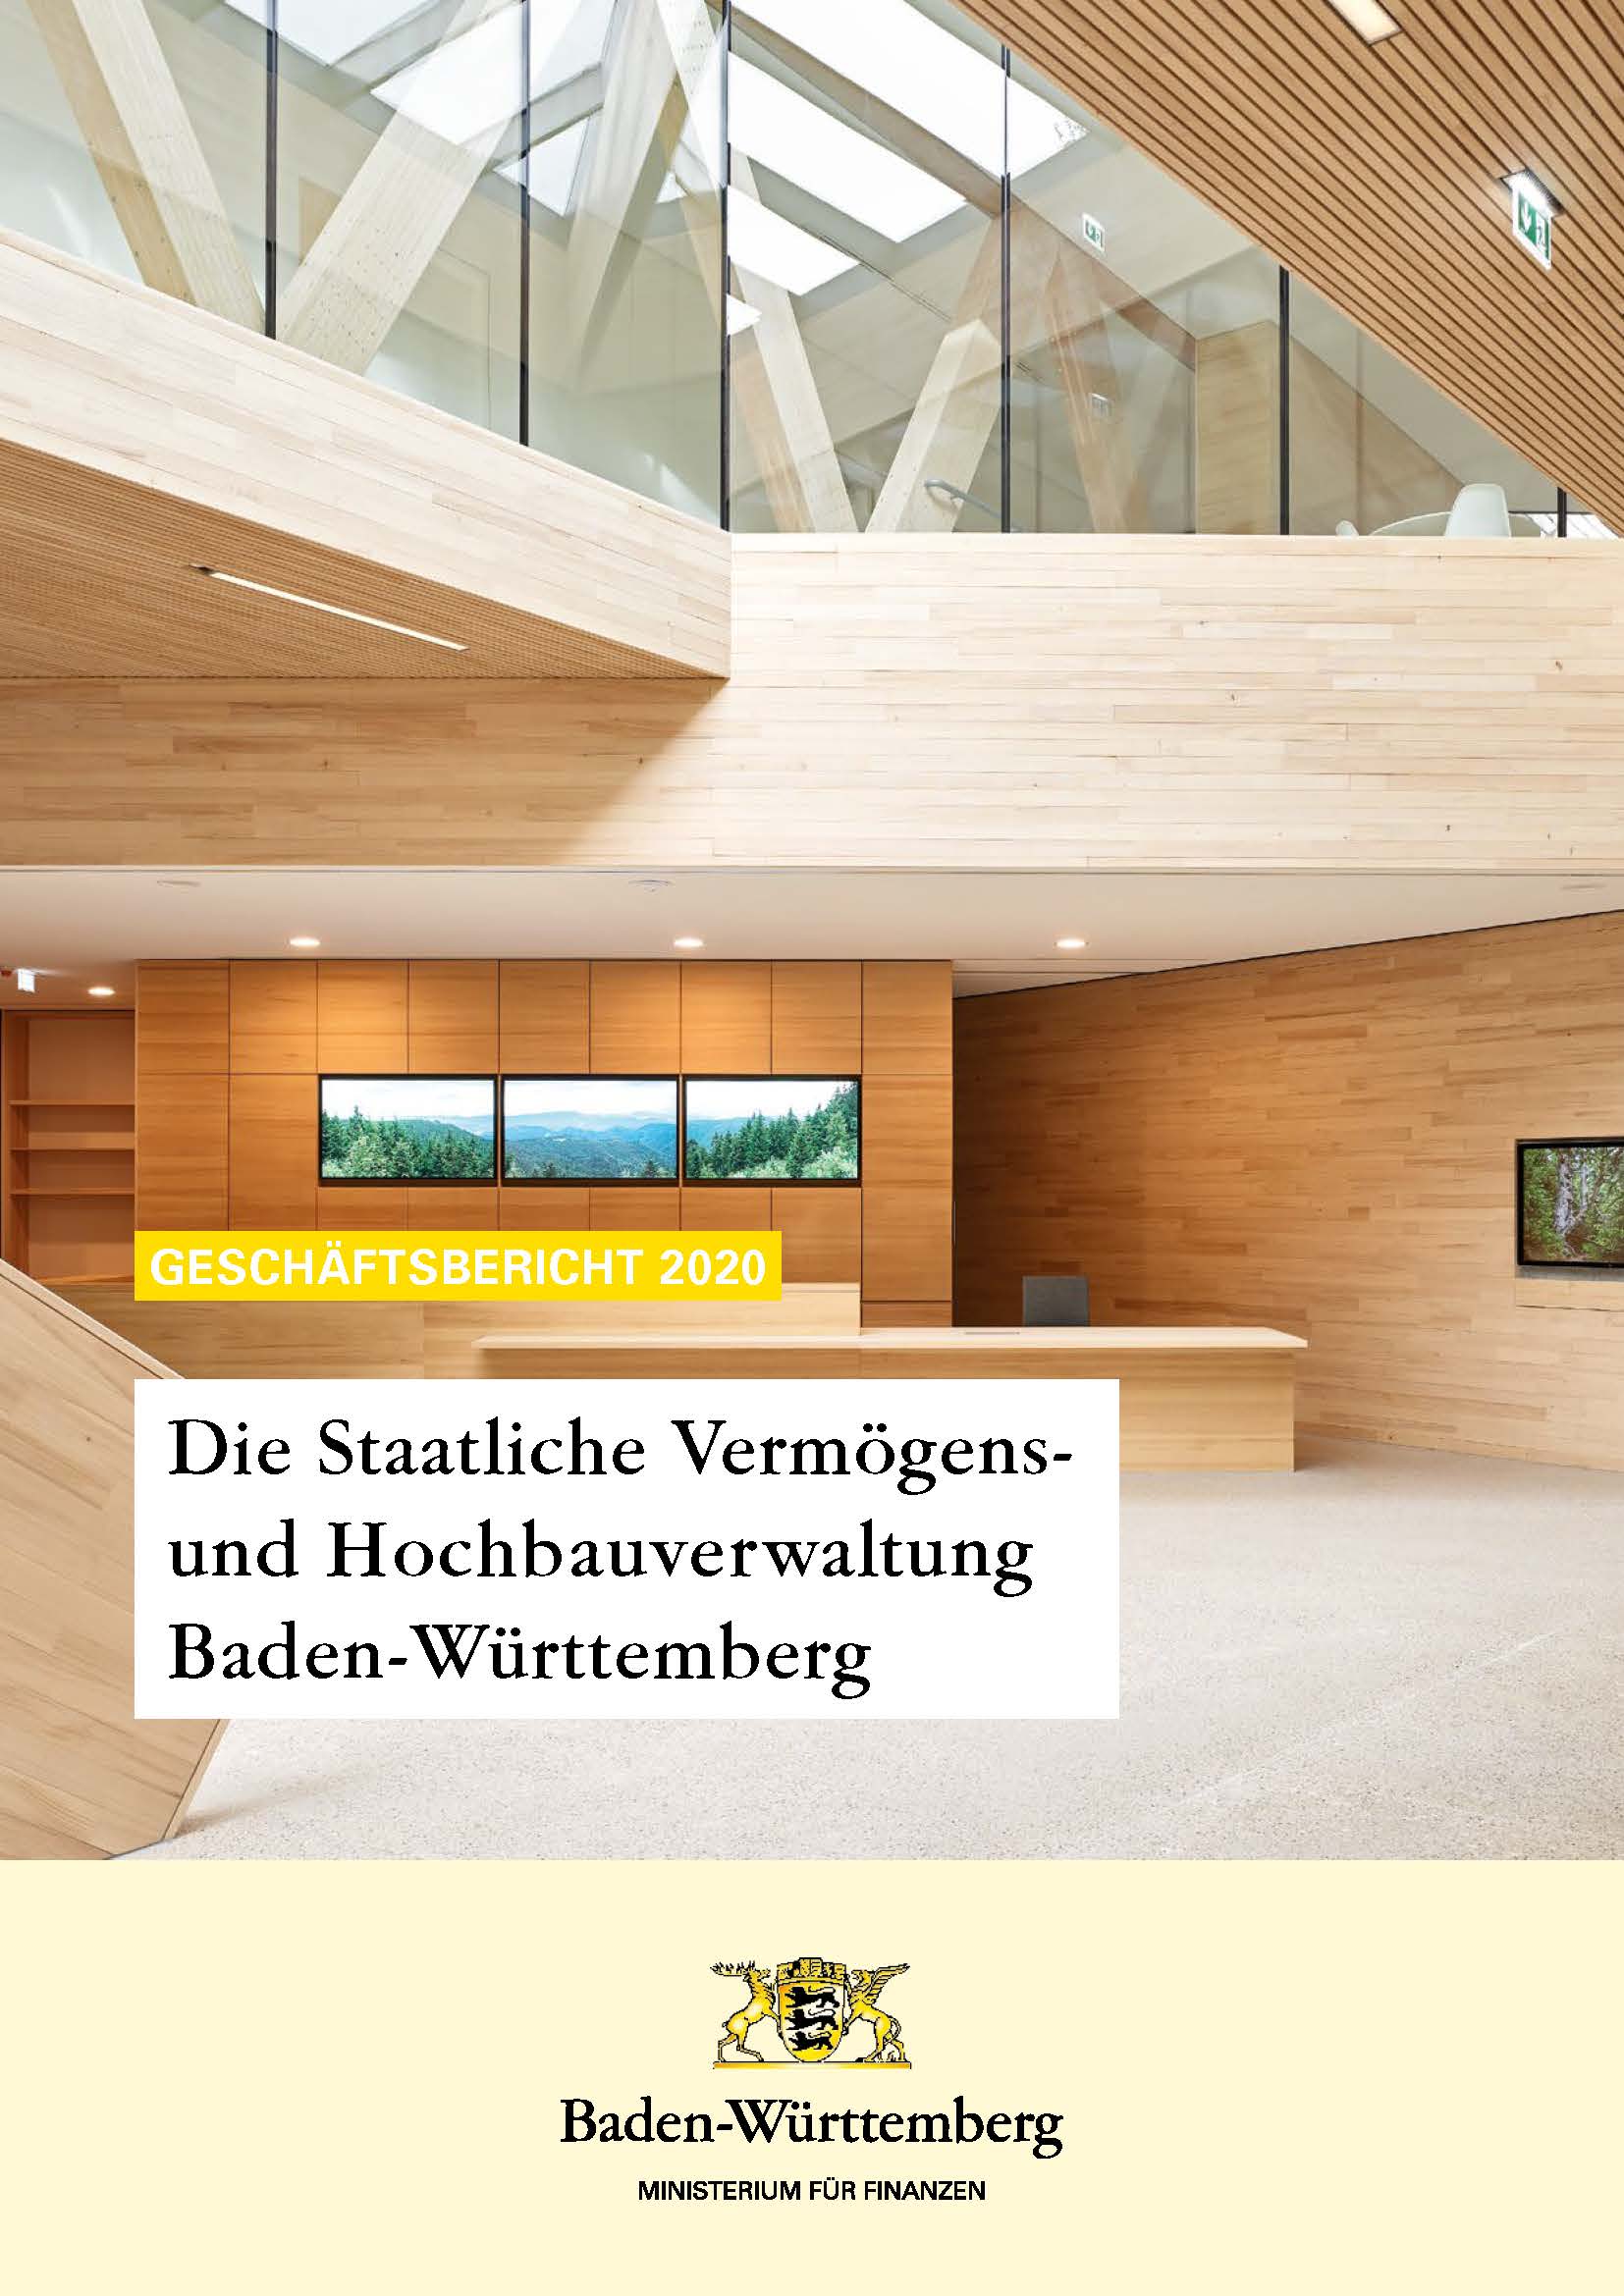 farbiger Titel des Geschäftsberichts 2020 der Staatlichen Vermögens- und Hochbauverwaltung Baden-Württemberg